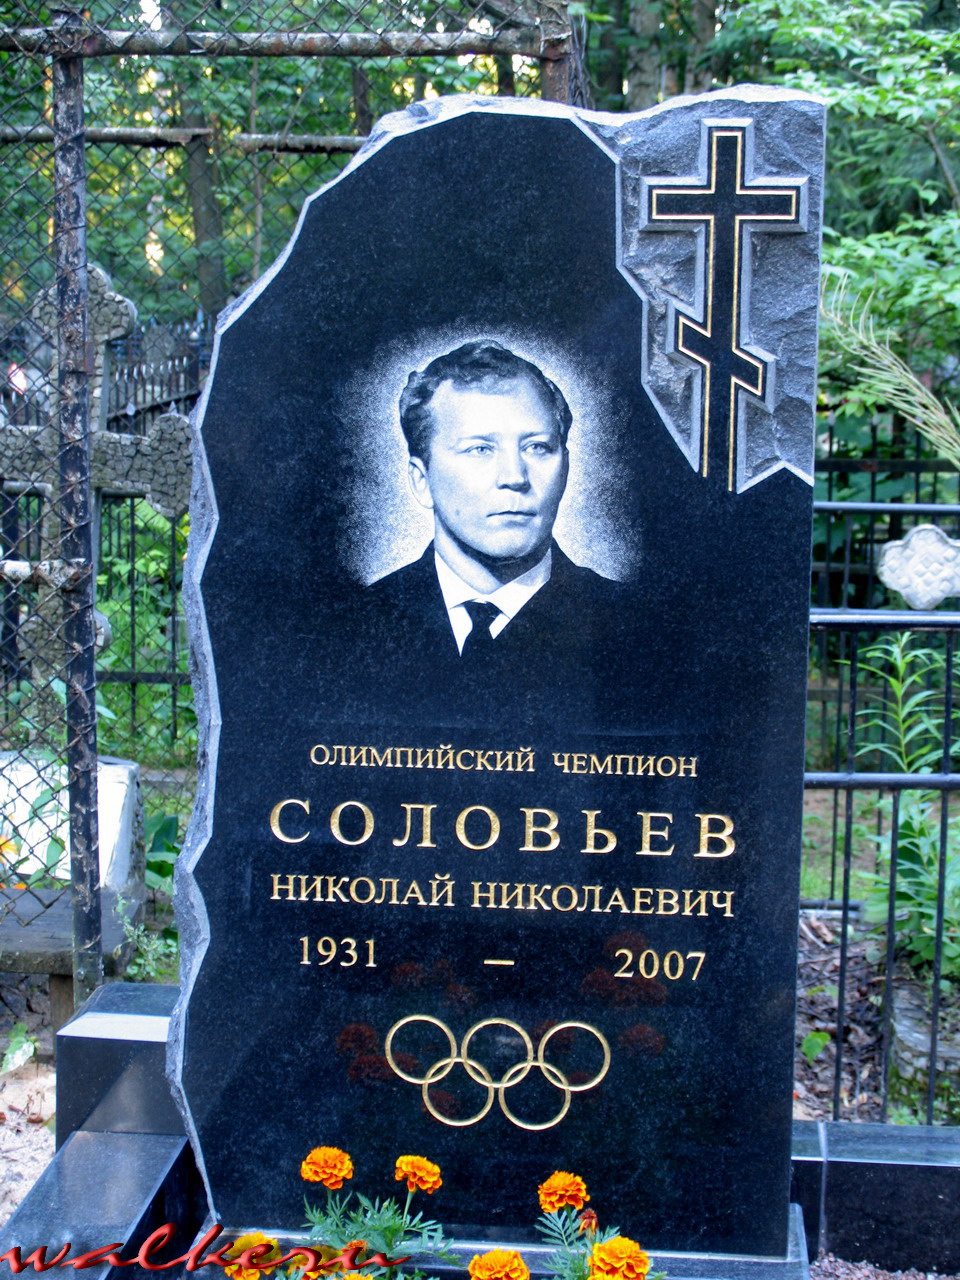 Могила СОЛОВЬЕВА Н.Н. на Богословском кладбище